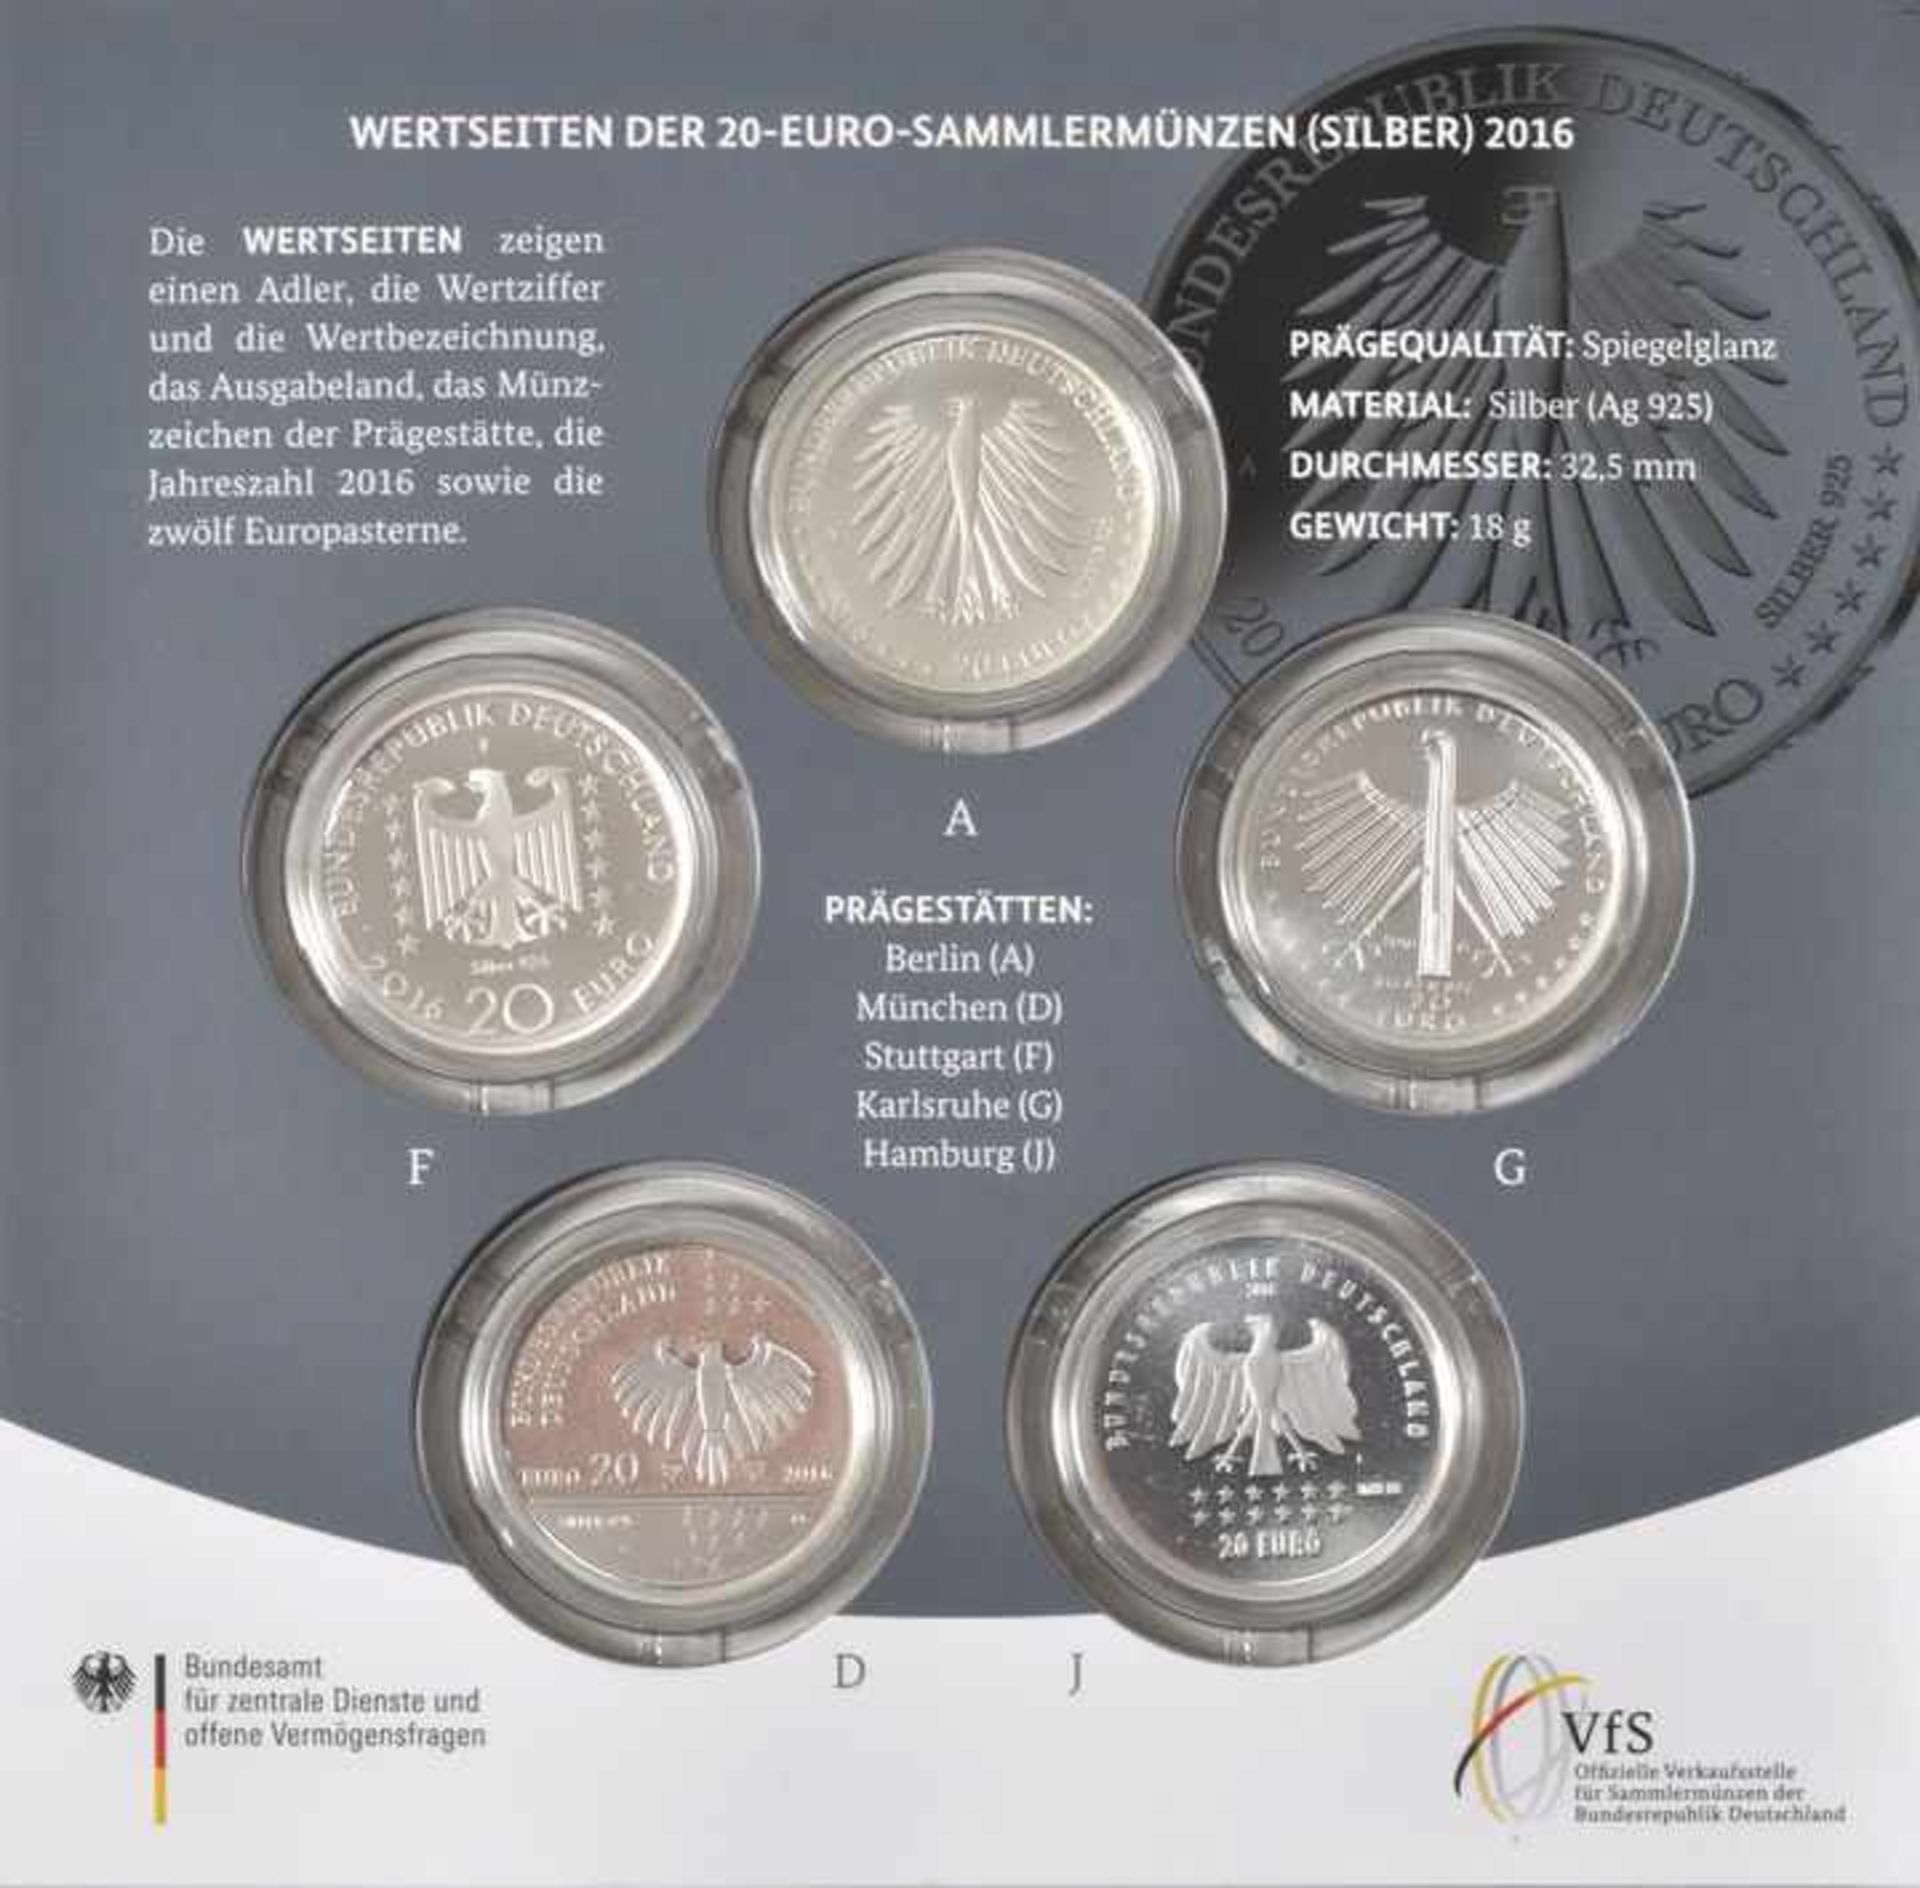 Sammlermünzenset, 5 x 20 Euro, BRD, 2016Jg. 2016, Silber 925, A, G, J, D, F, Spiegelglanz, - Bild 3 aus 3